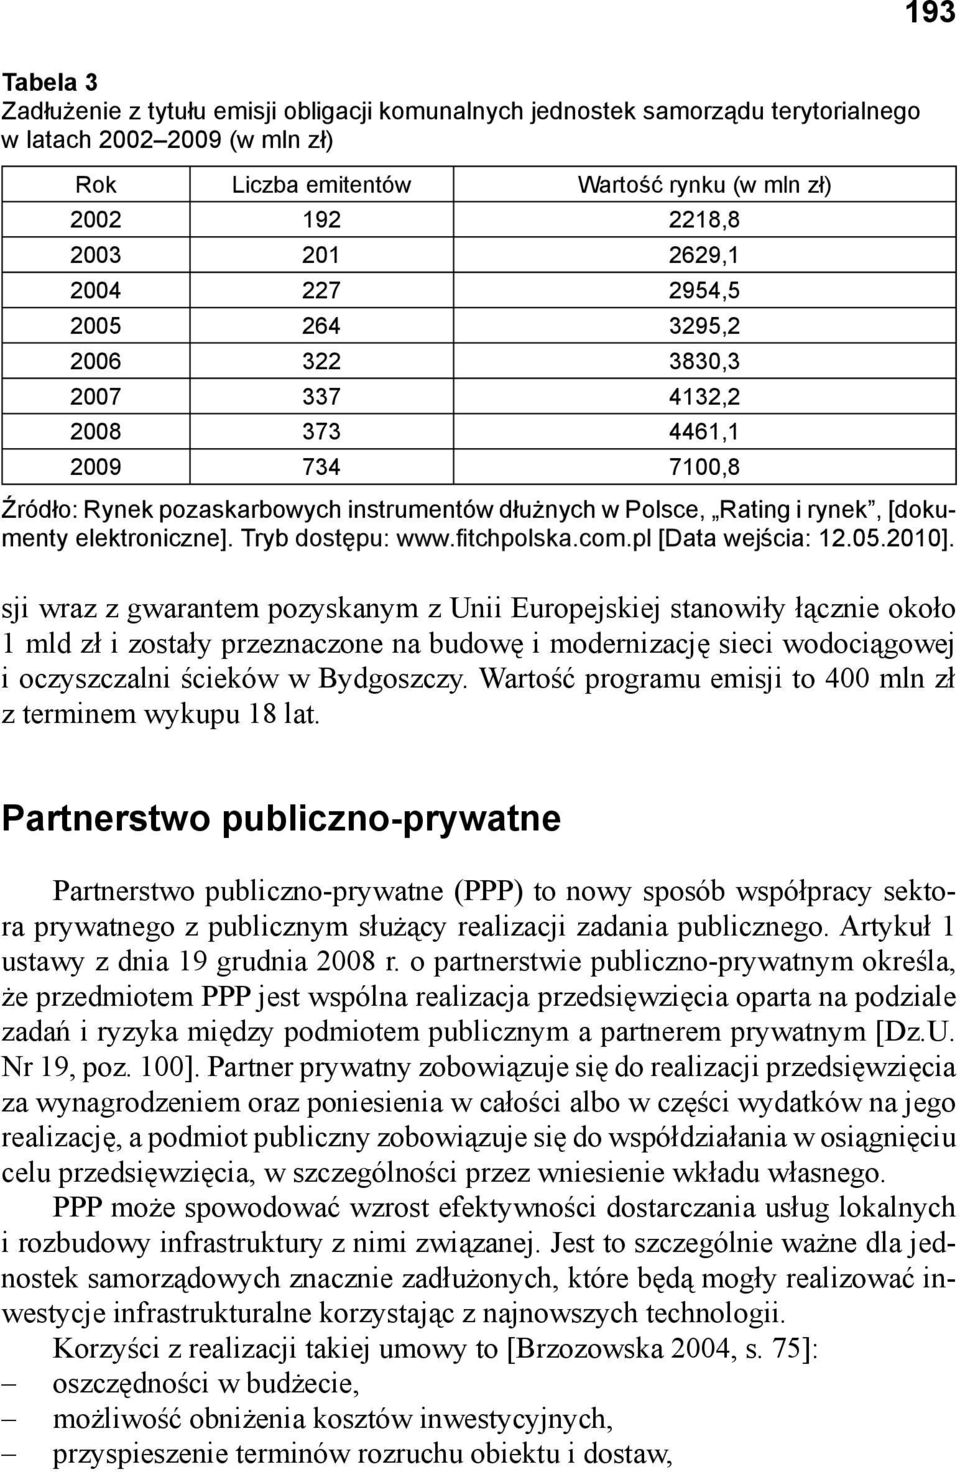 Tryb dostępu: www.fi tchpolska.com.pl [Data wejścia: 12.05.2010].